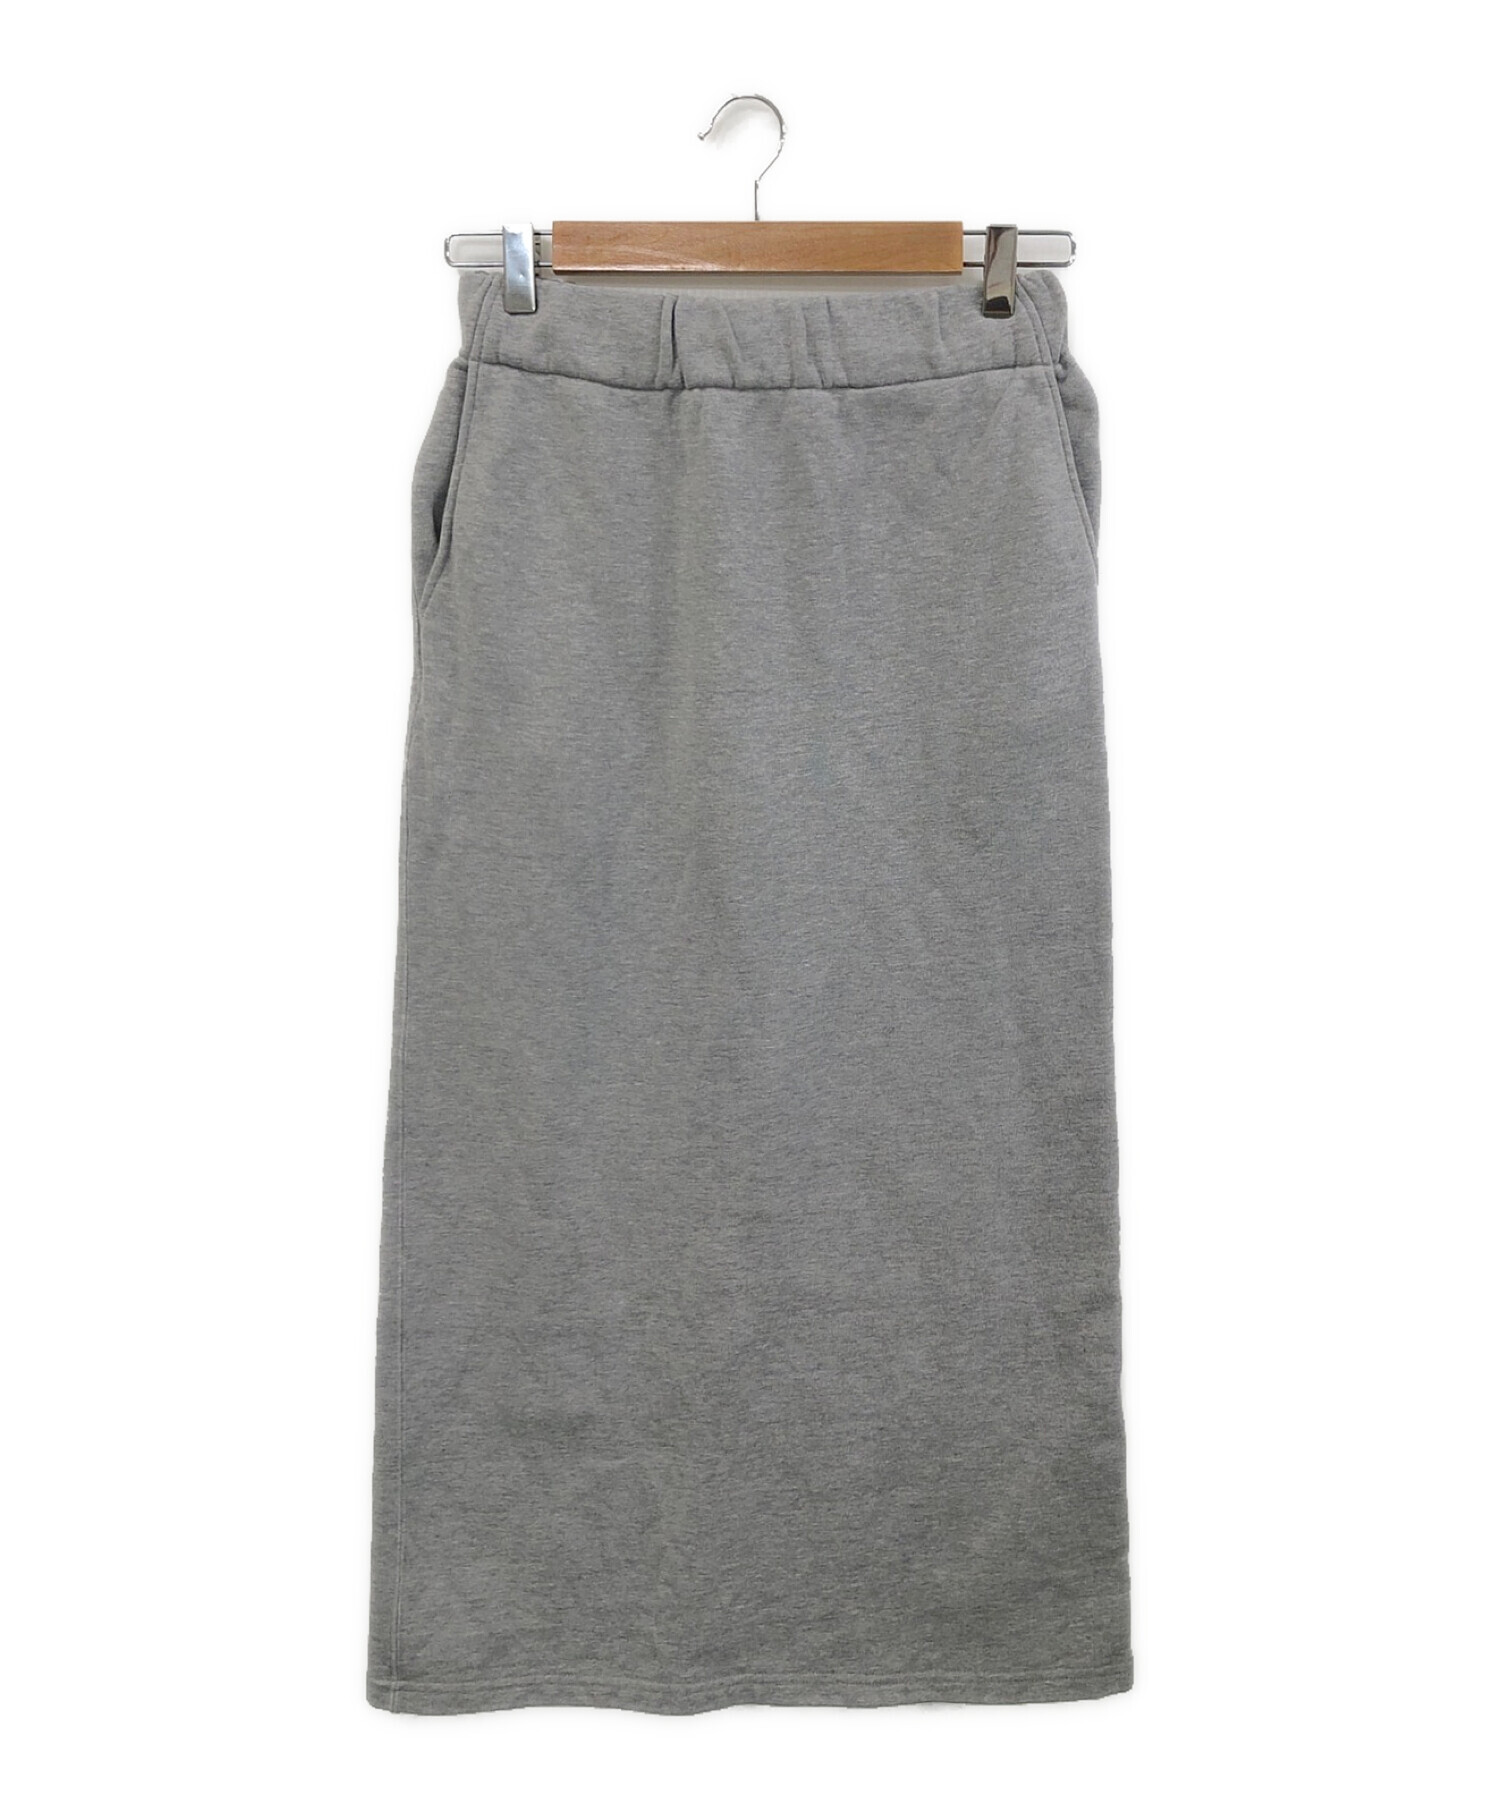 REMI RELIEF (レミレリーフ) Sweat Skirt グレー サイズ:S